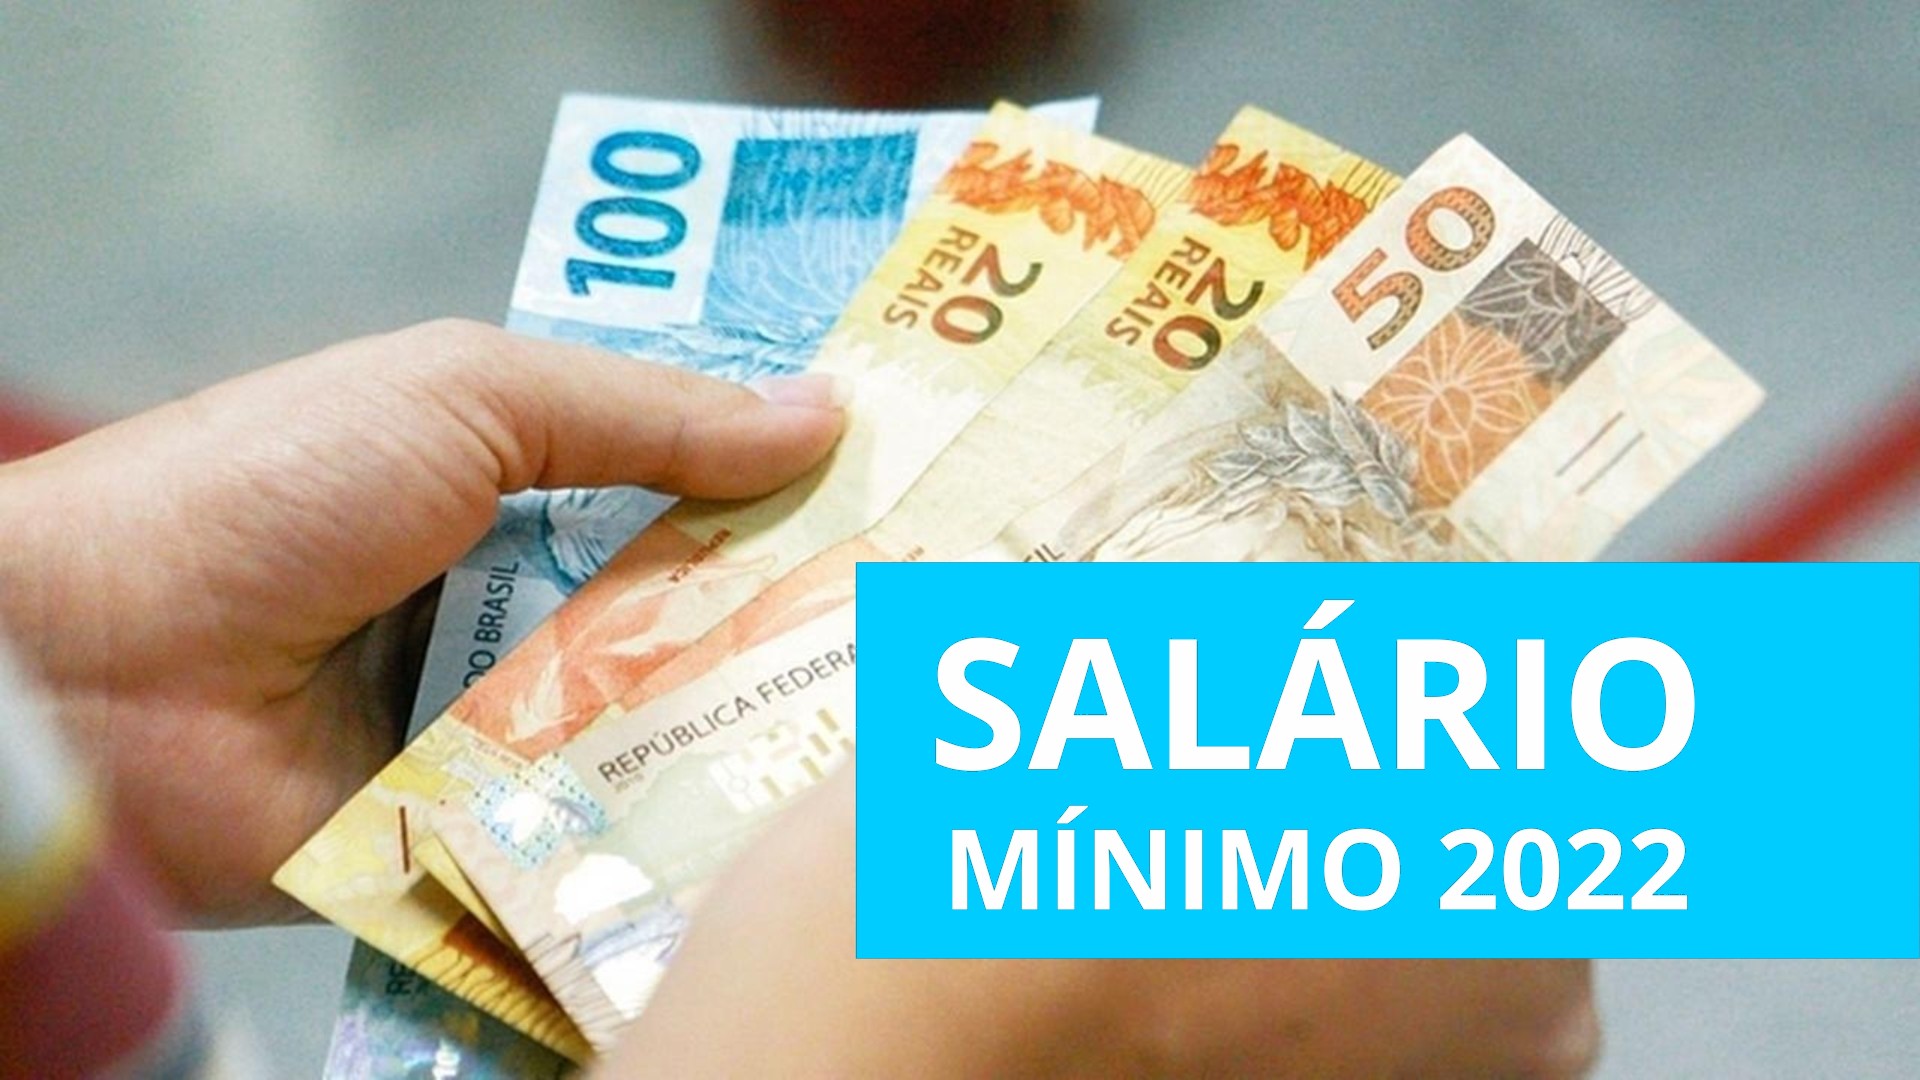 Confirmado o trabalhador brasileiro terá aumento no valor do salário mínimo para R$ 1.212 em 2022